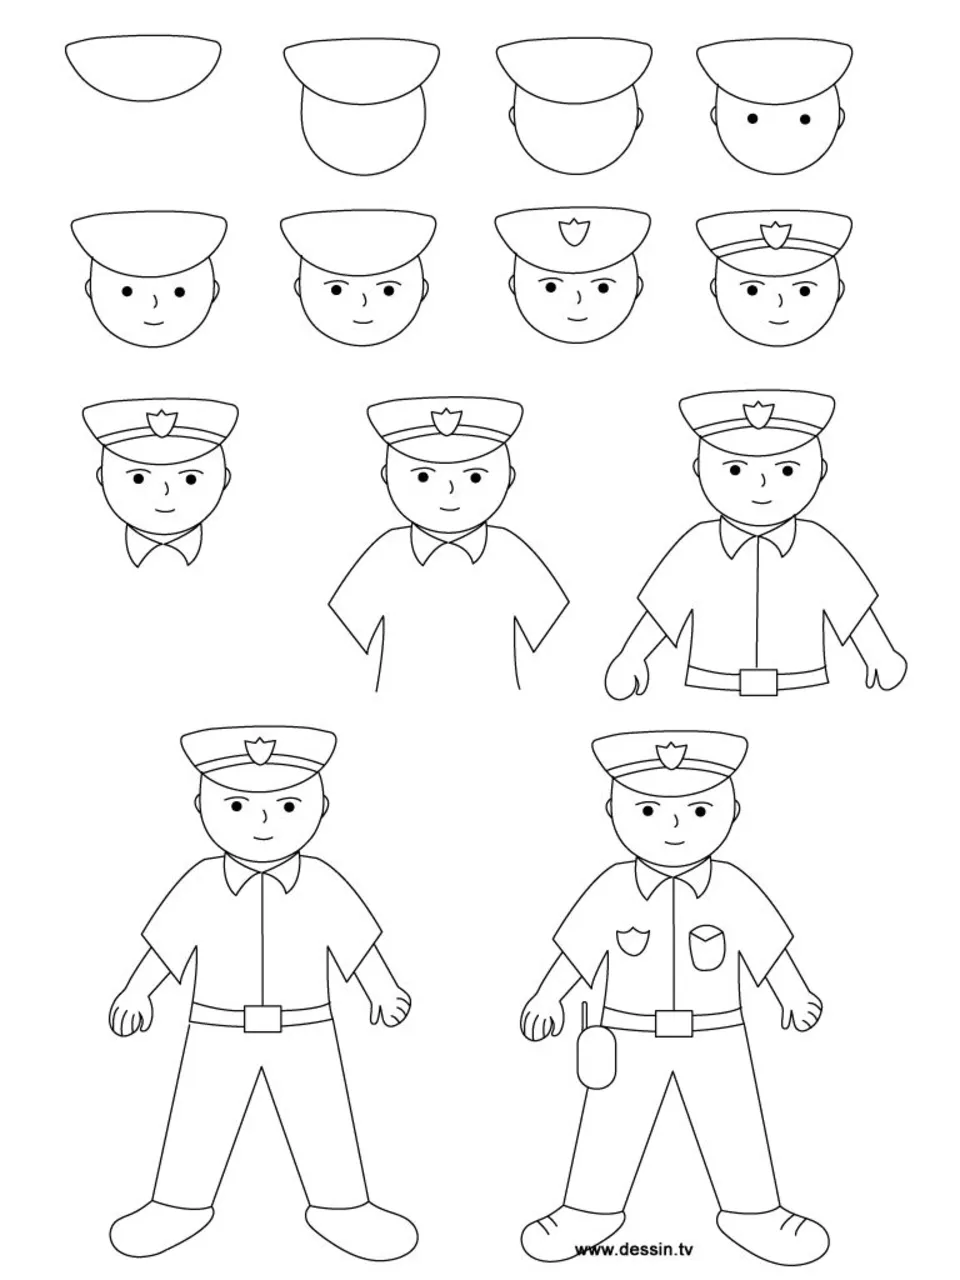 Полицейский рисунок для детей карандашом